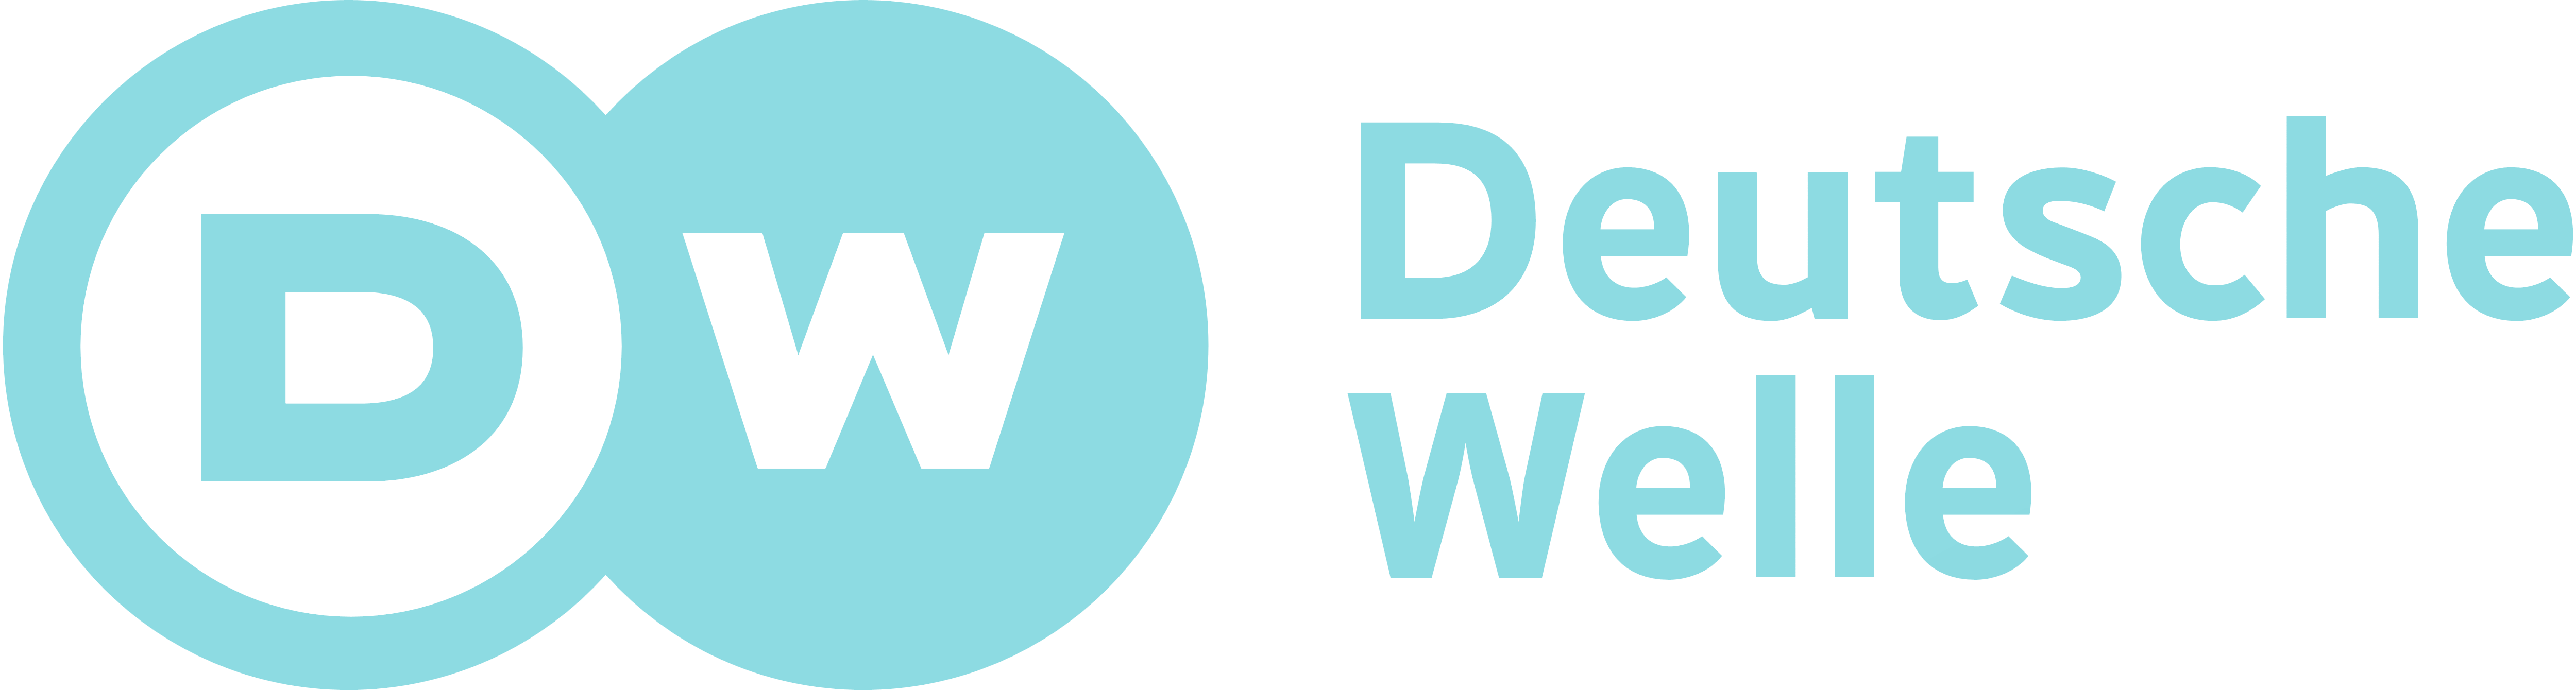 DeutscheWelle logo